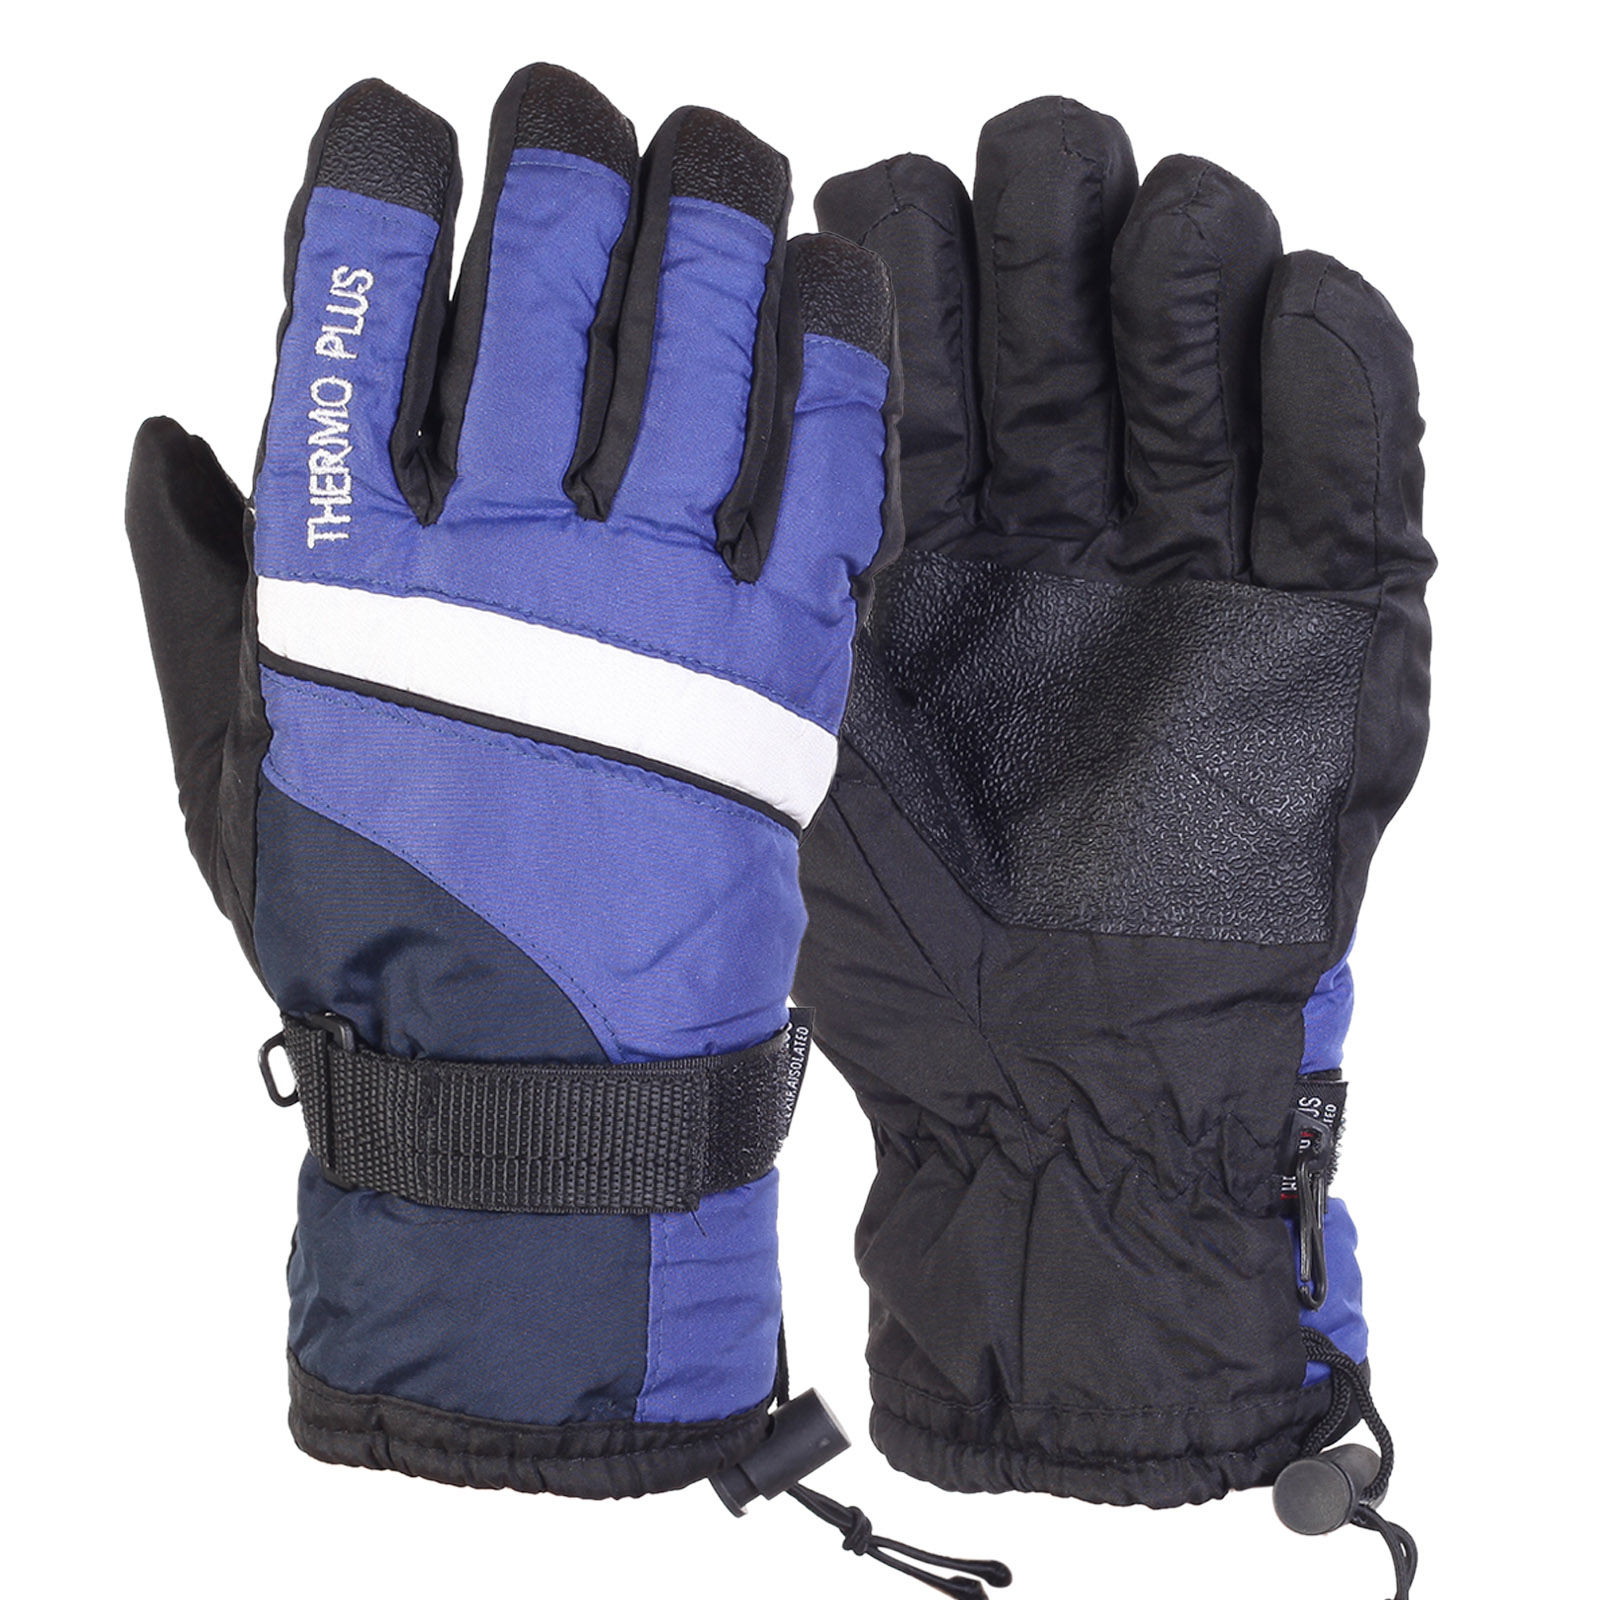 Купить в интернет магазине качественные лыжные перчатки